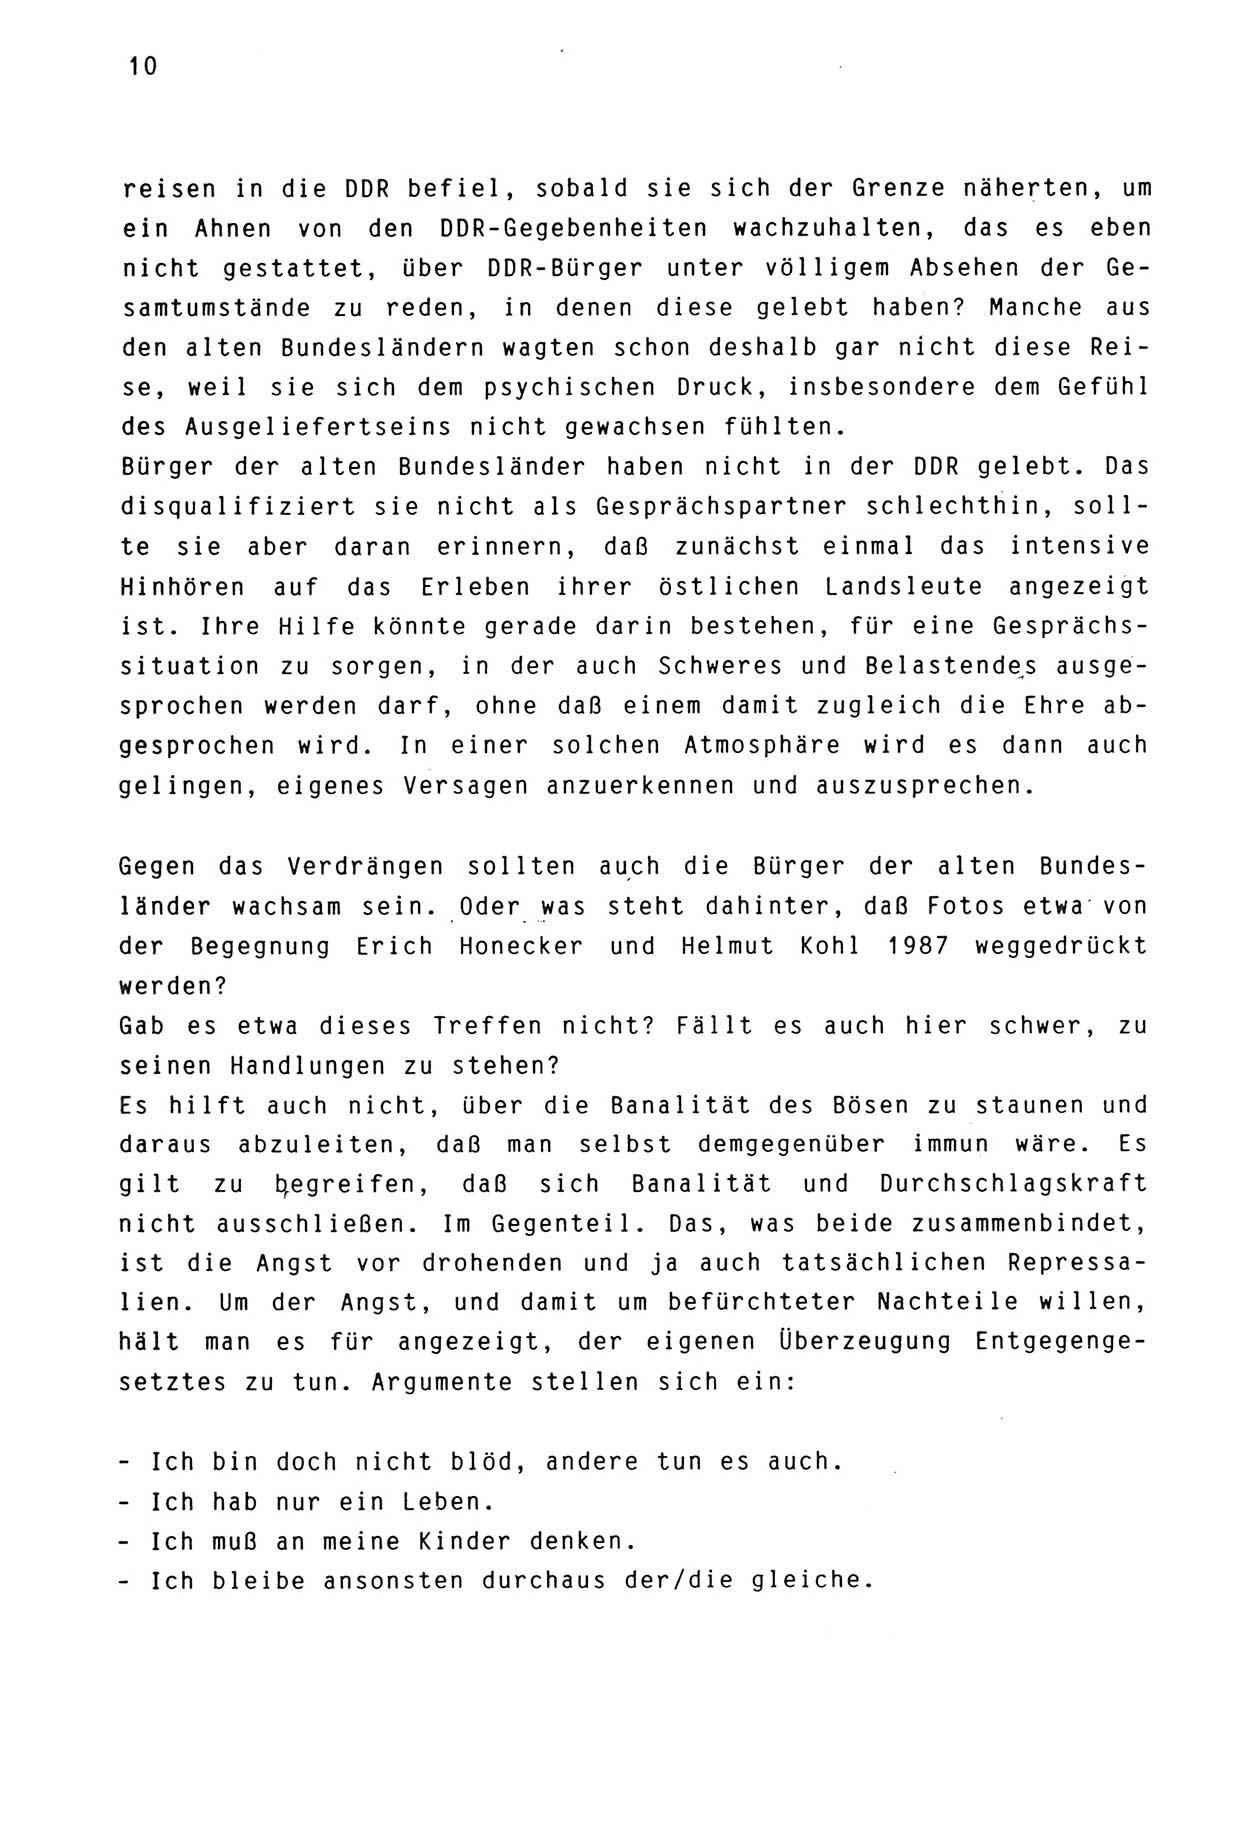 Zwie-Gespräch, Beiträge zur Aufarbeitung der Stasi-Vergangenheit [Deutsche Demokratische Republik (DDR)], Ausgabe Nr. 3, Berlin 1991, Seite 10 (Zwie-Gespr. Ausg. 3 1991, S. 10)